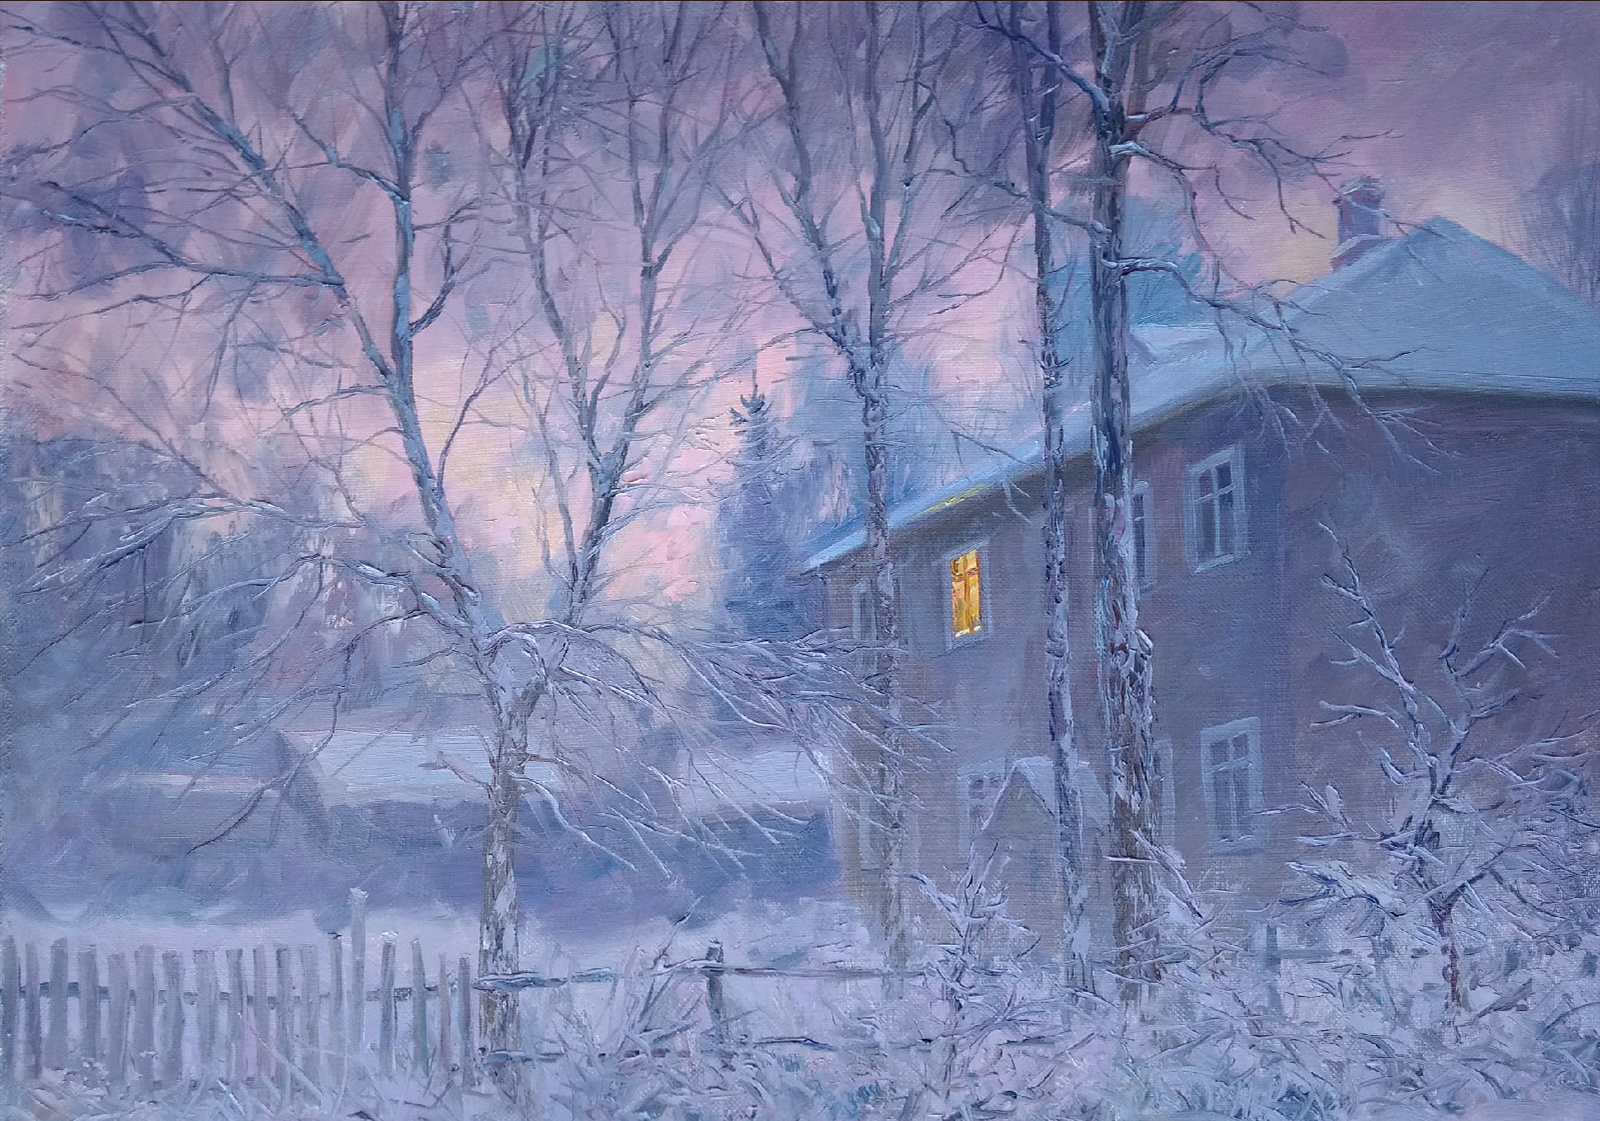 Lilac Twilight - 1, Vyacheslav Cherdakov, Buy the painting Oil